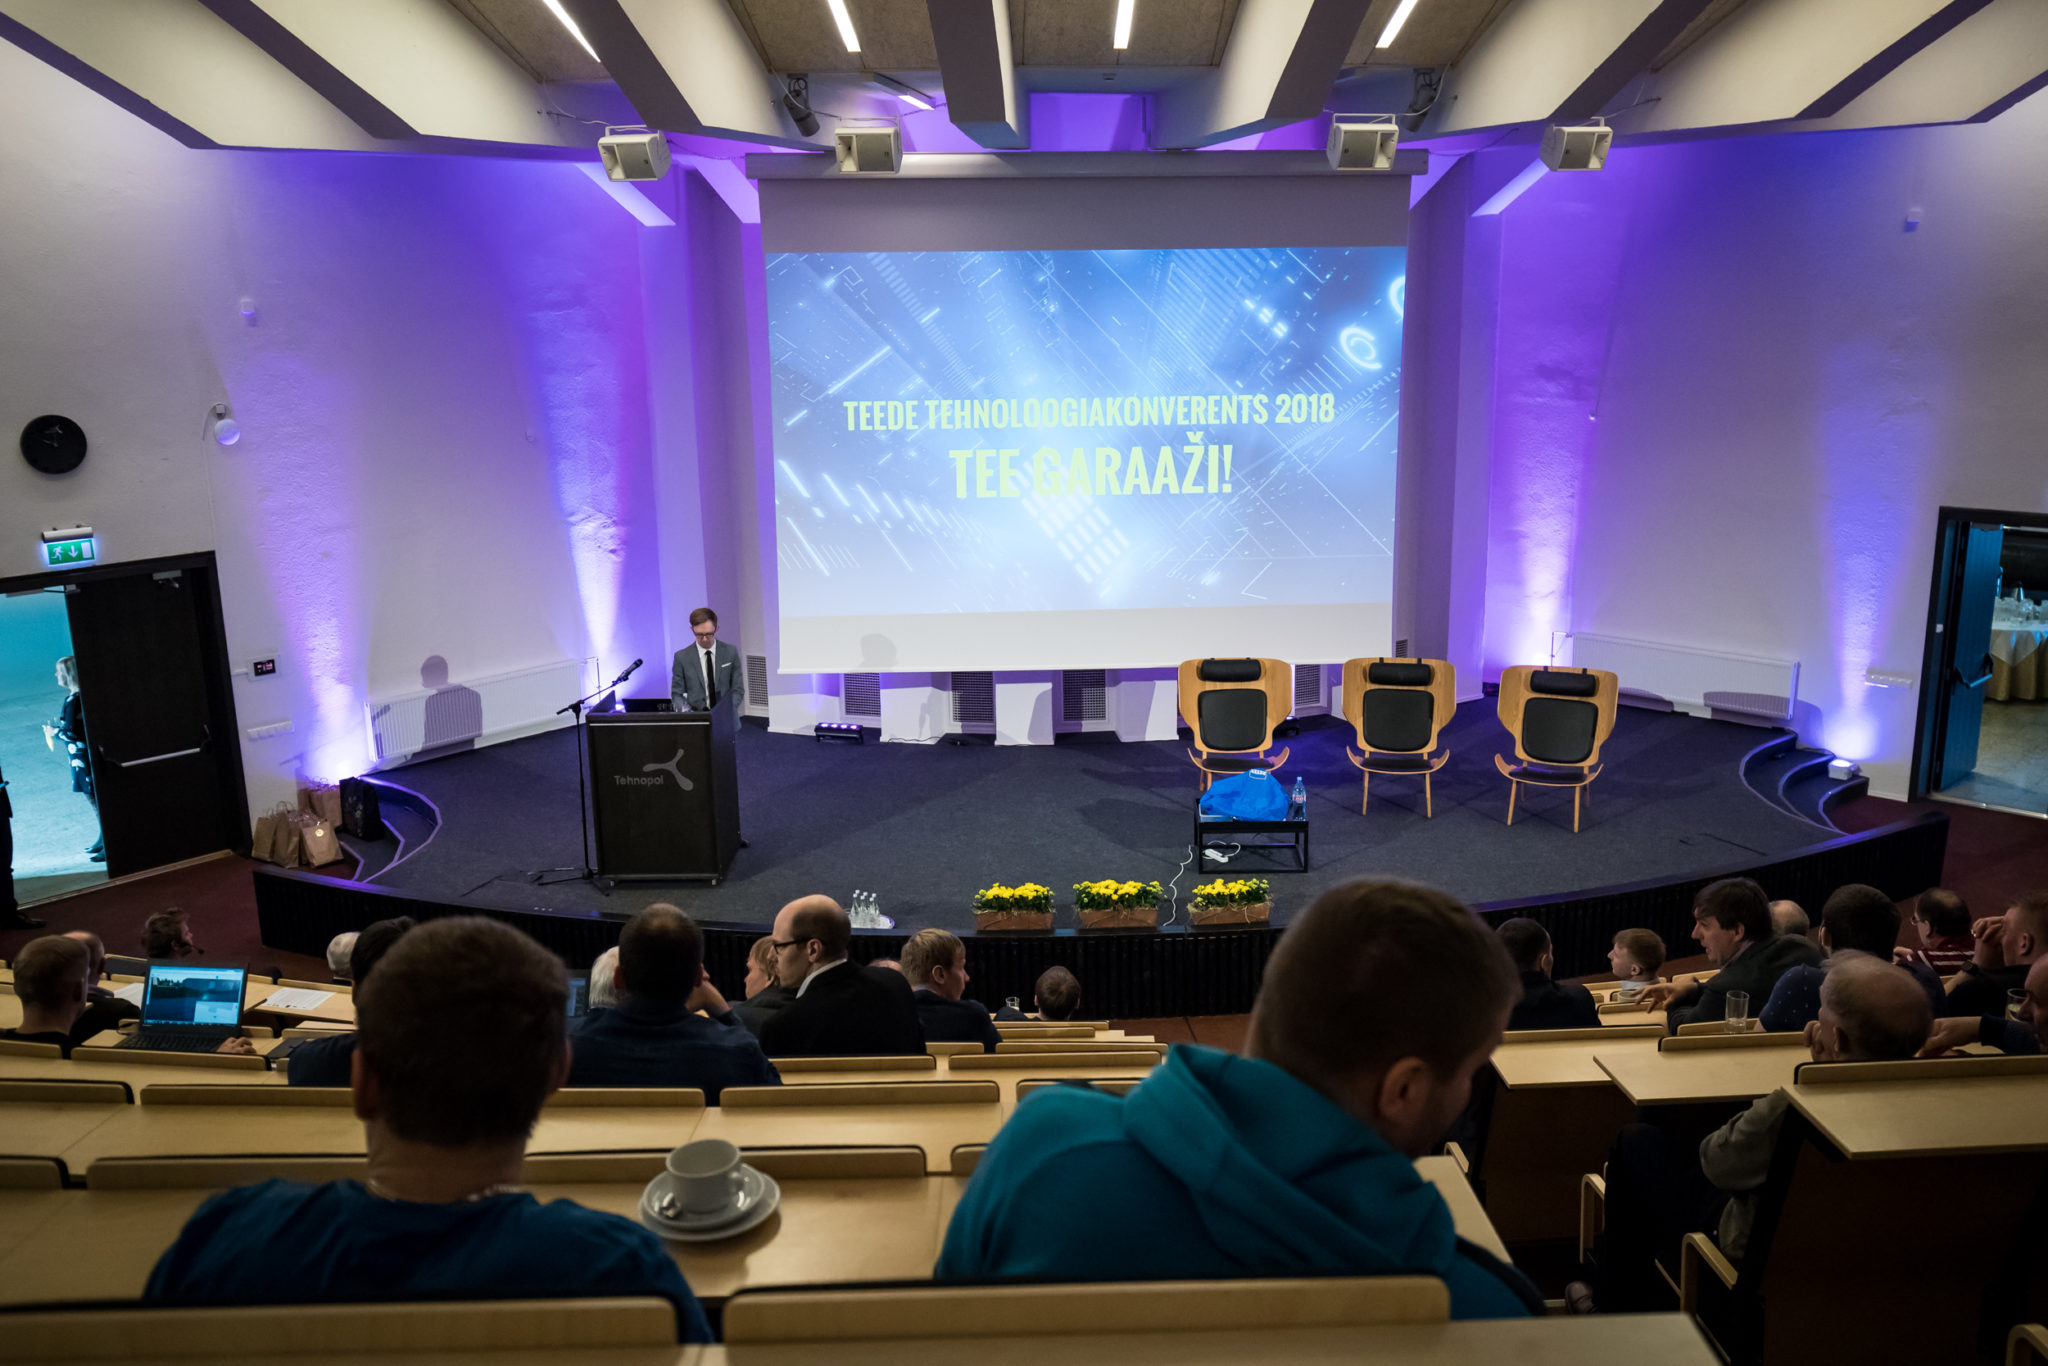 Teede Tehnoloogiakonverents 2018 ettekanded ja pildid